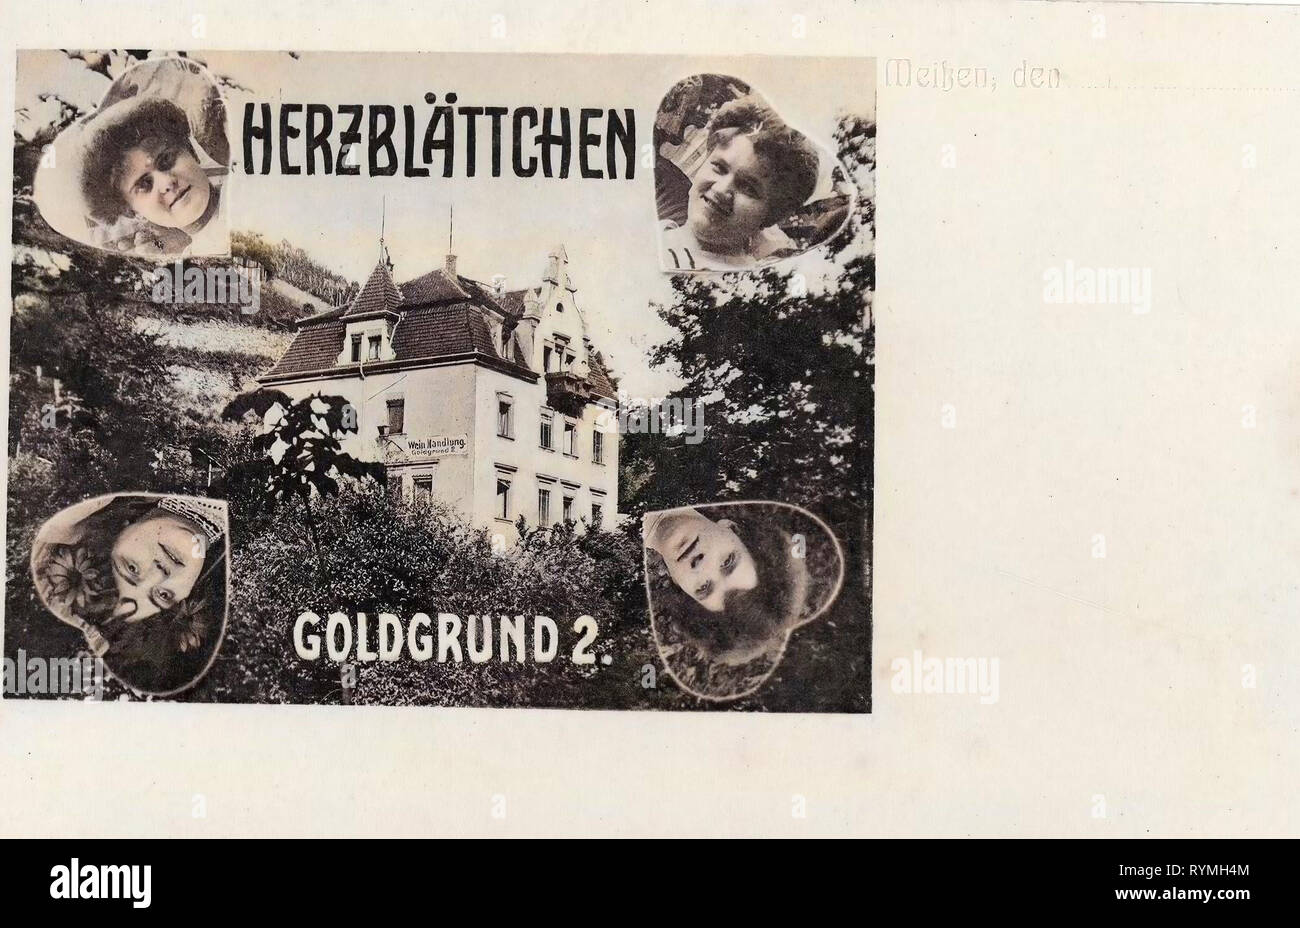 Wine trade, Buildings in Meißen, Multiview postcards, Women of Germany in art, 1908, Meißen, Herzblättchen Goldgrund 2, Weinhandlung Stock Photo